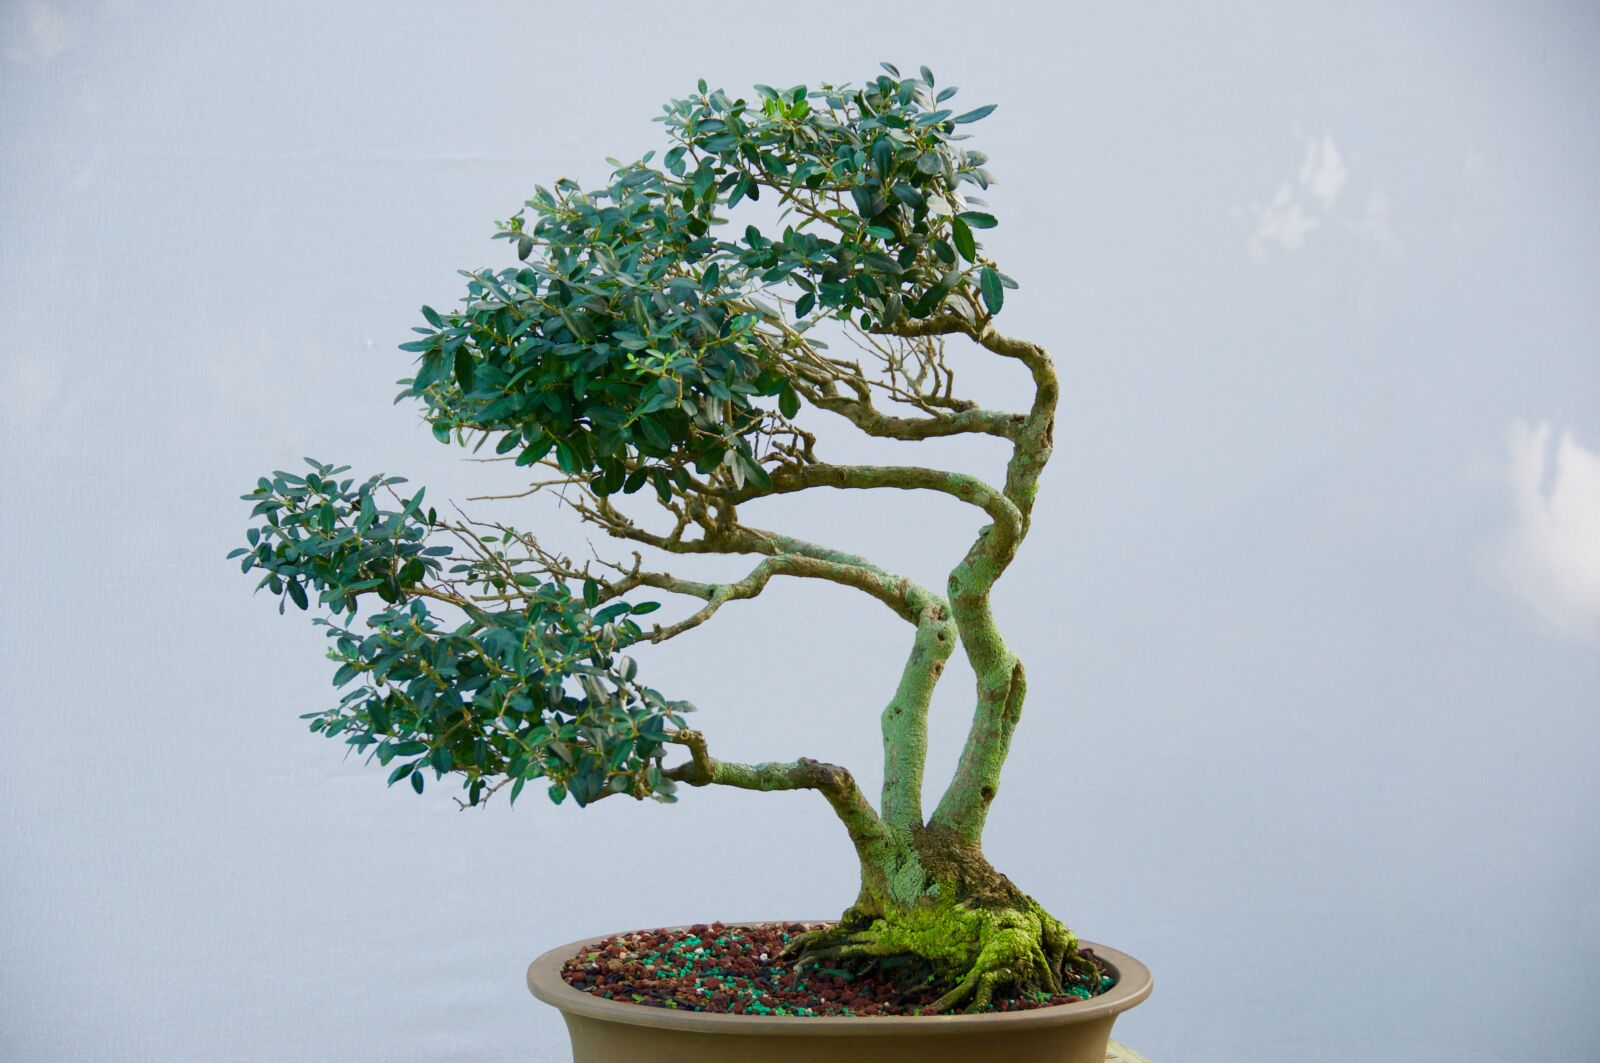 Nikon D90 sample photo. Tree, bonsai, nature photography